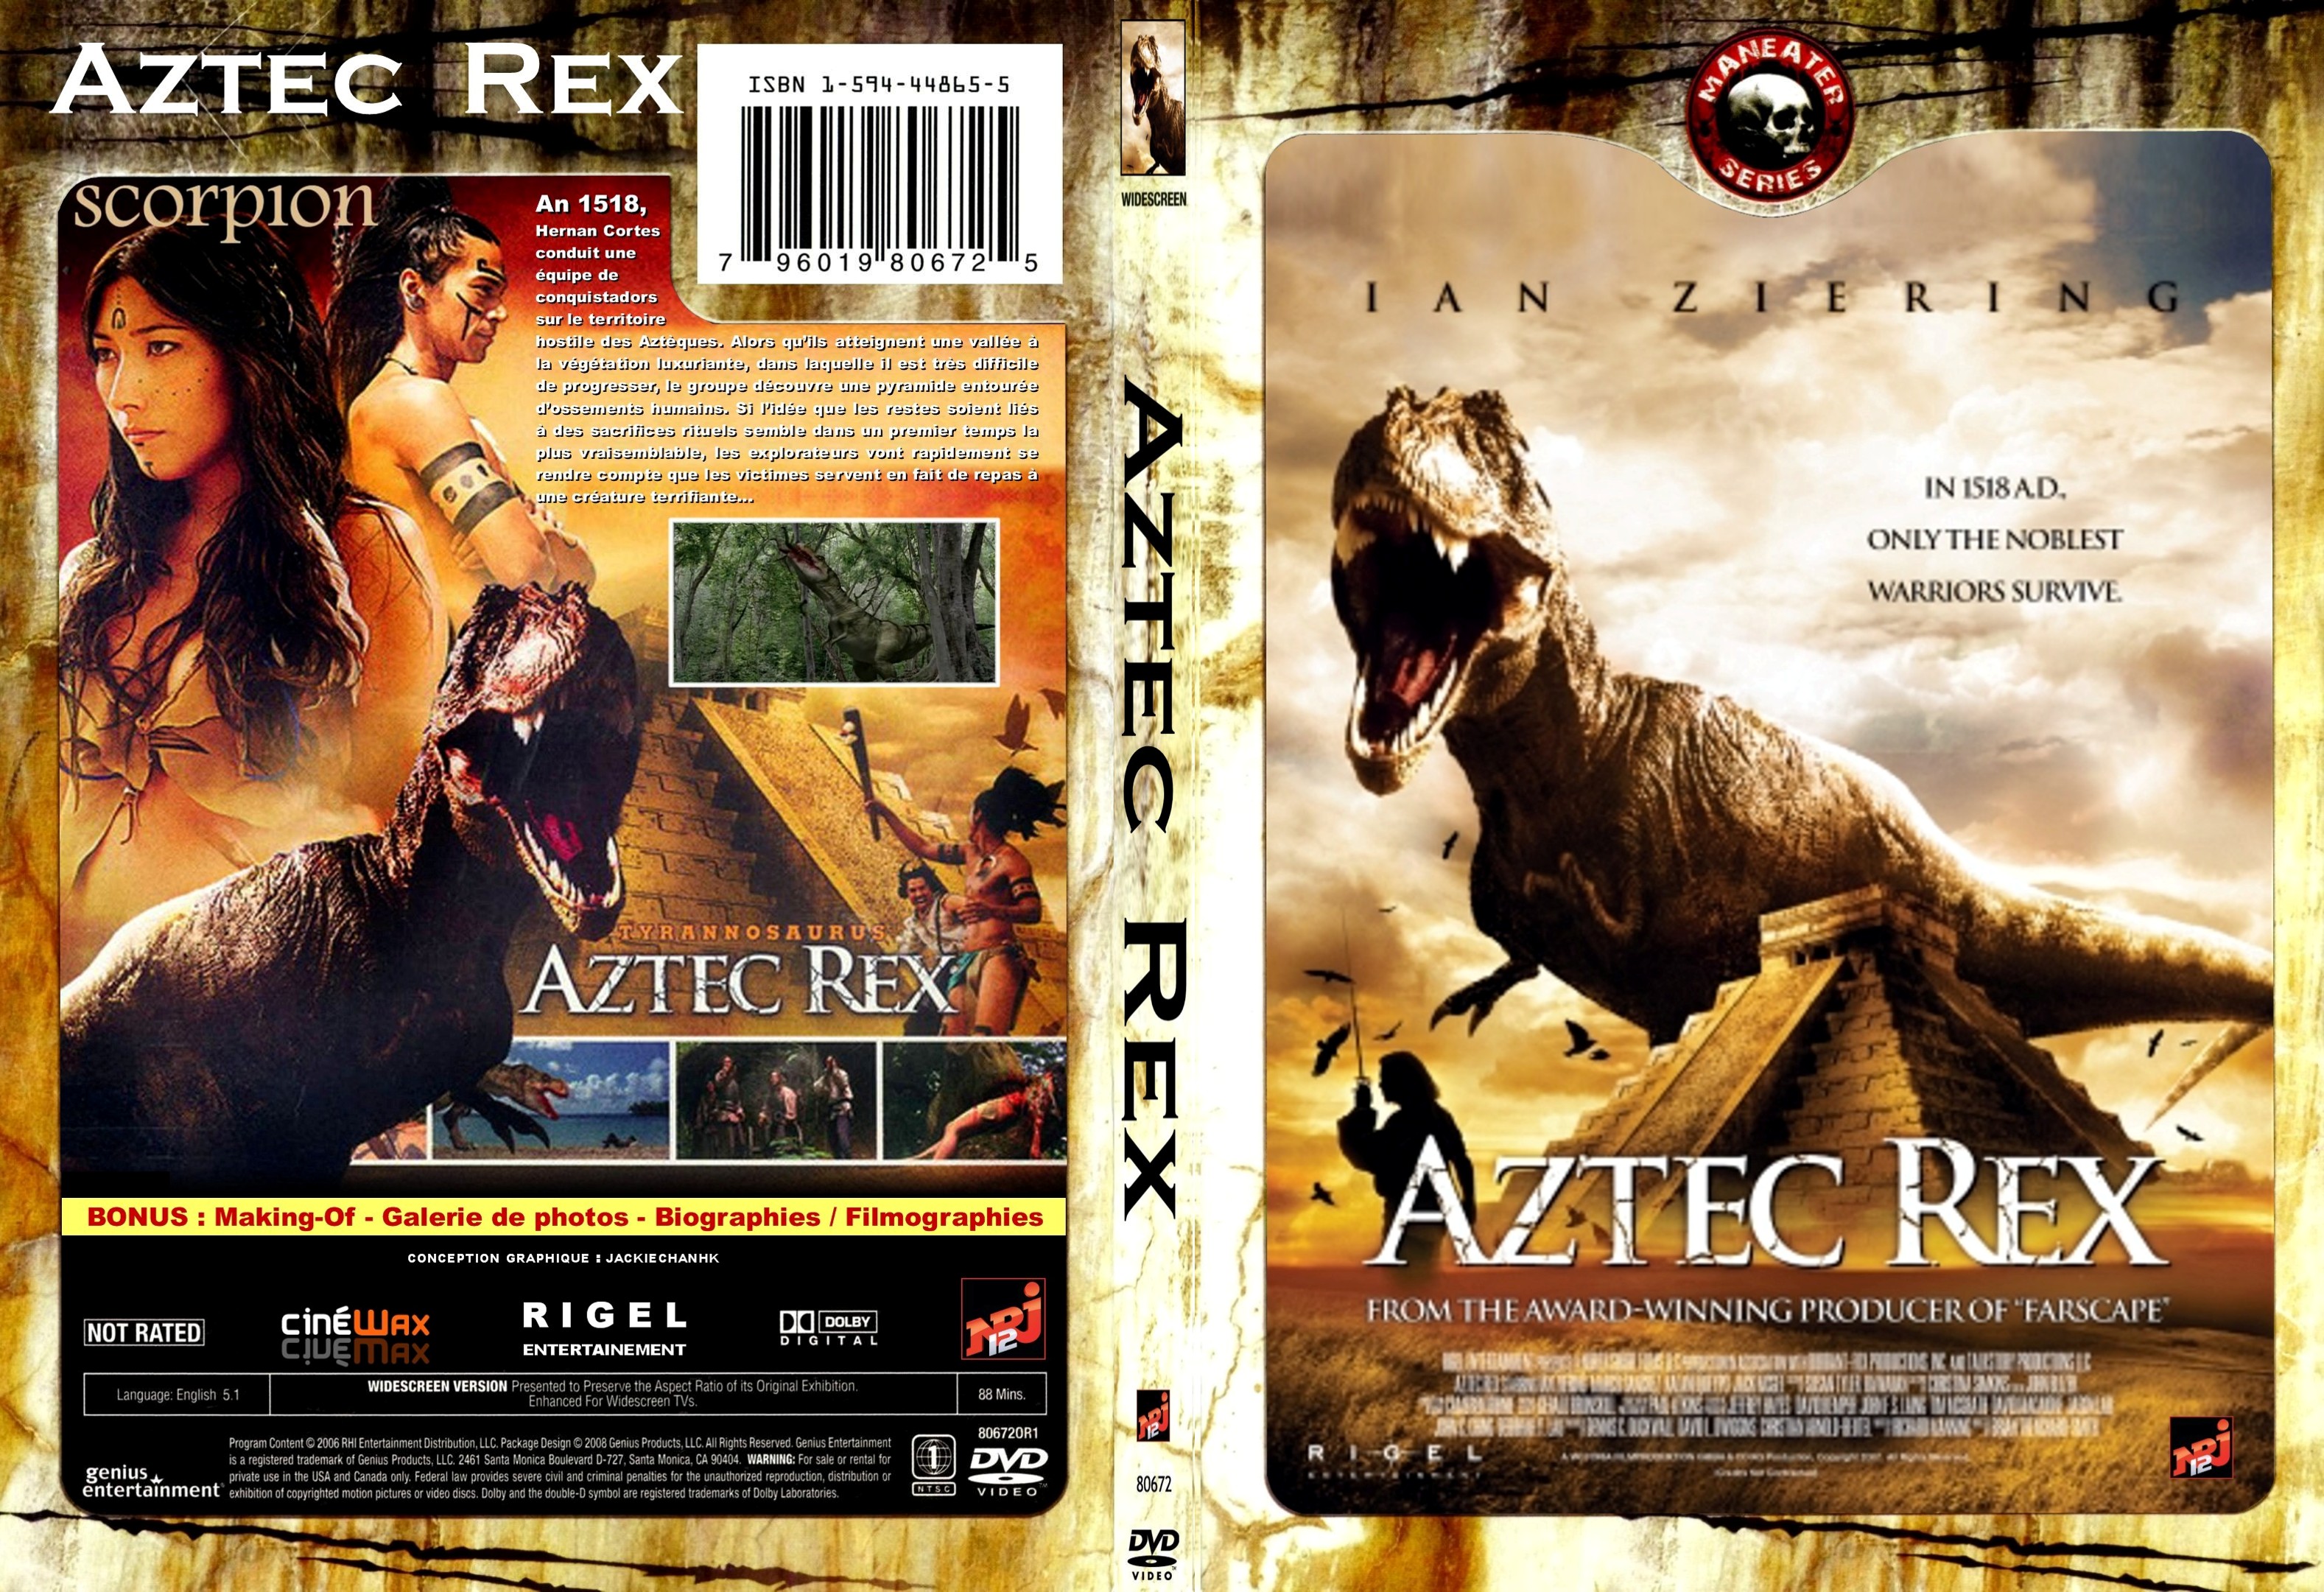 Jaquette DVD Aztec rex custom - SLIM